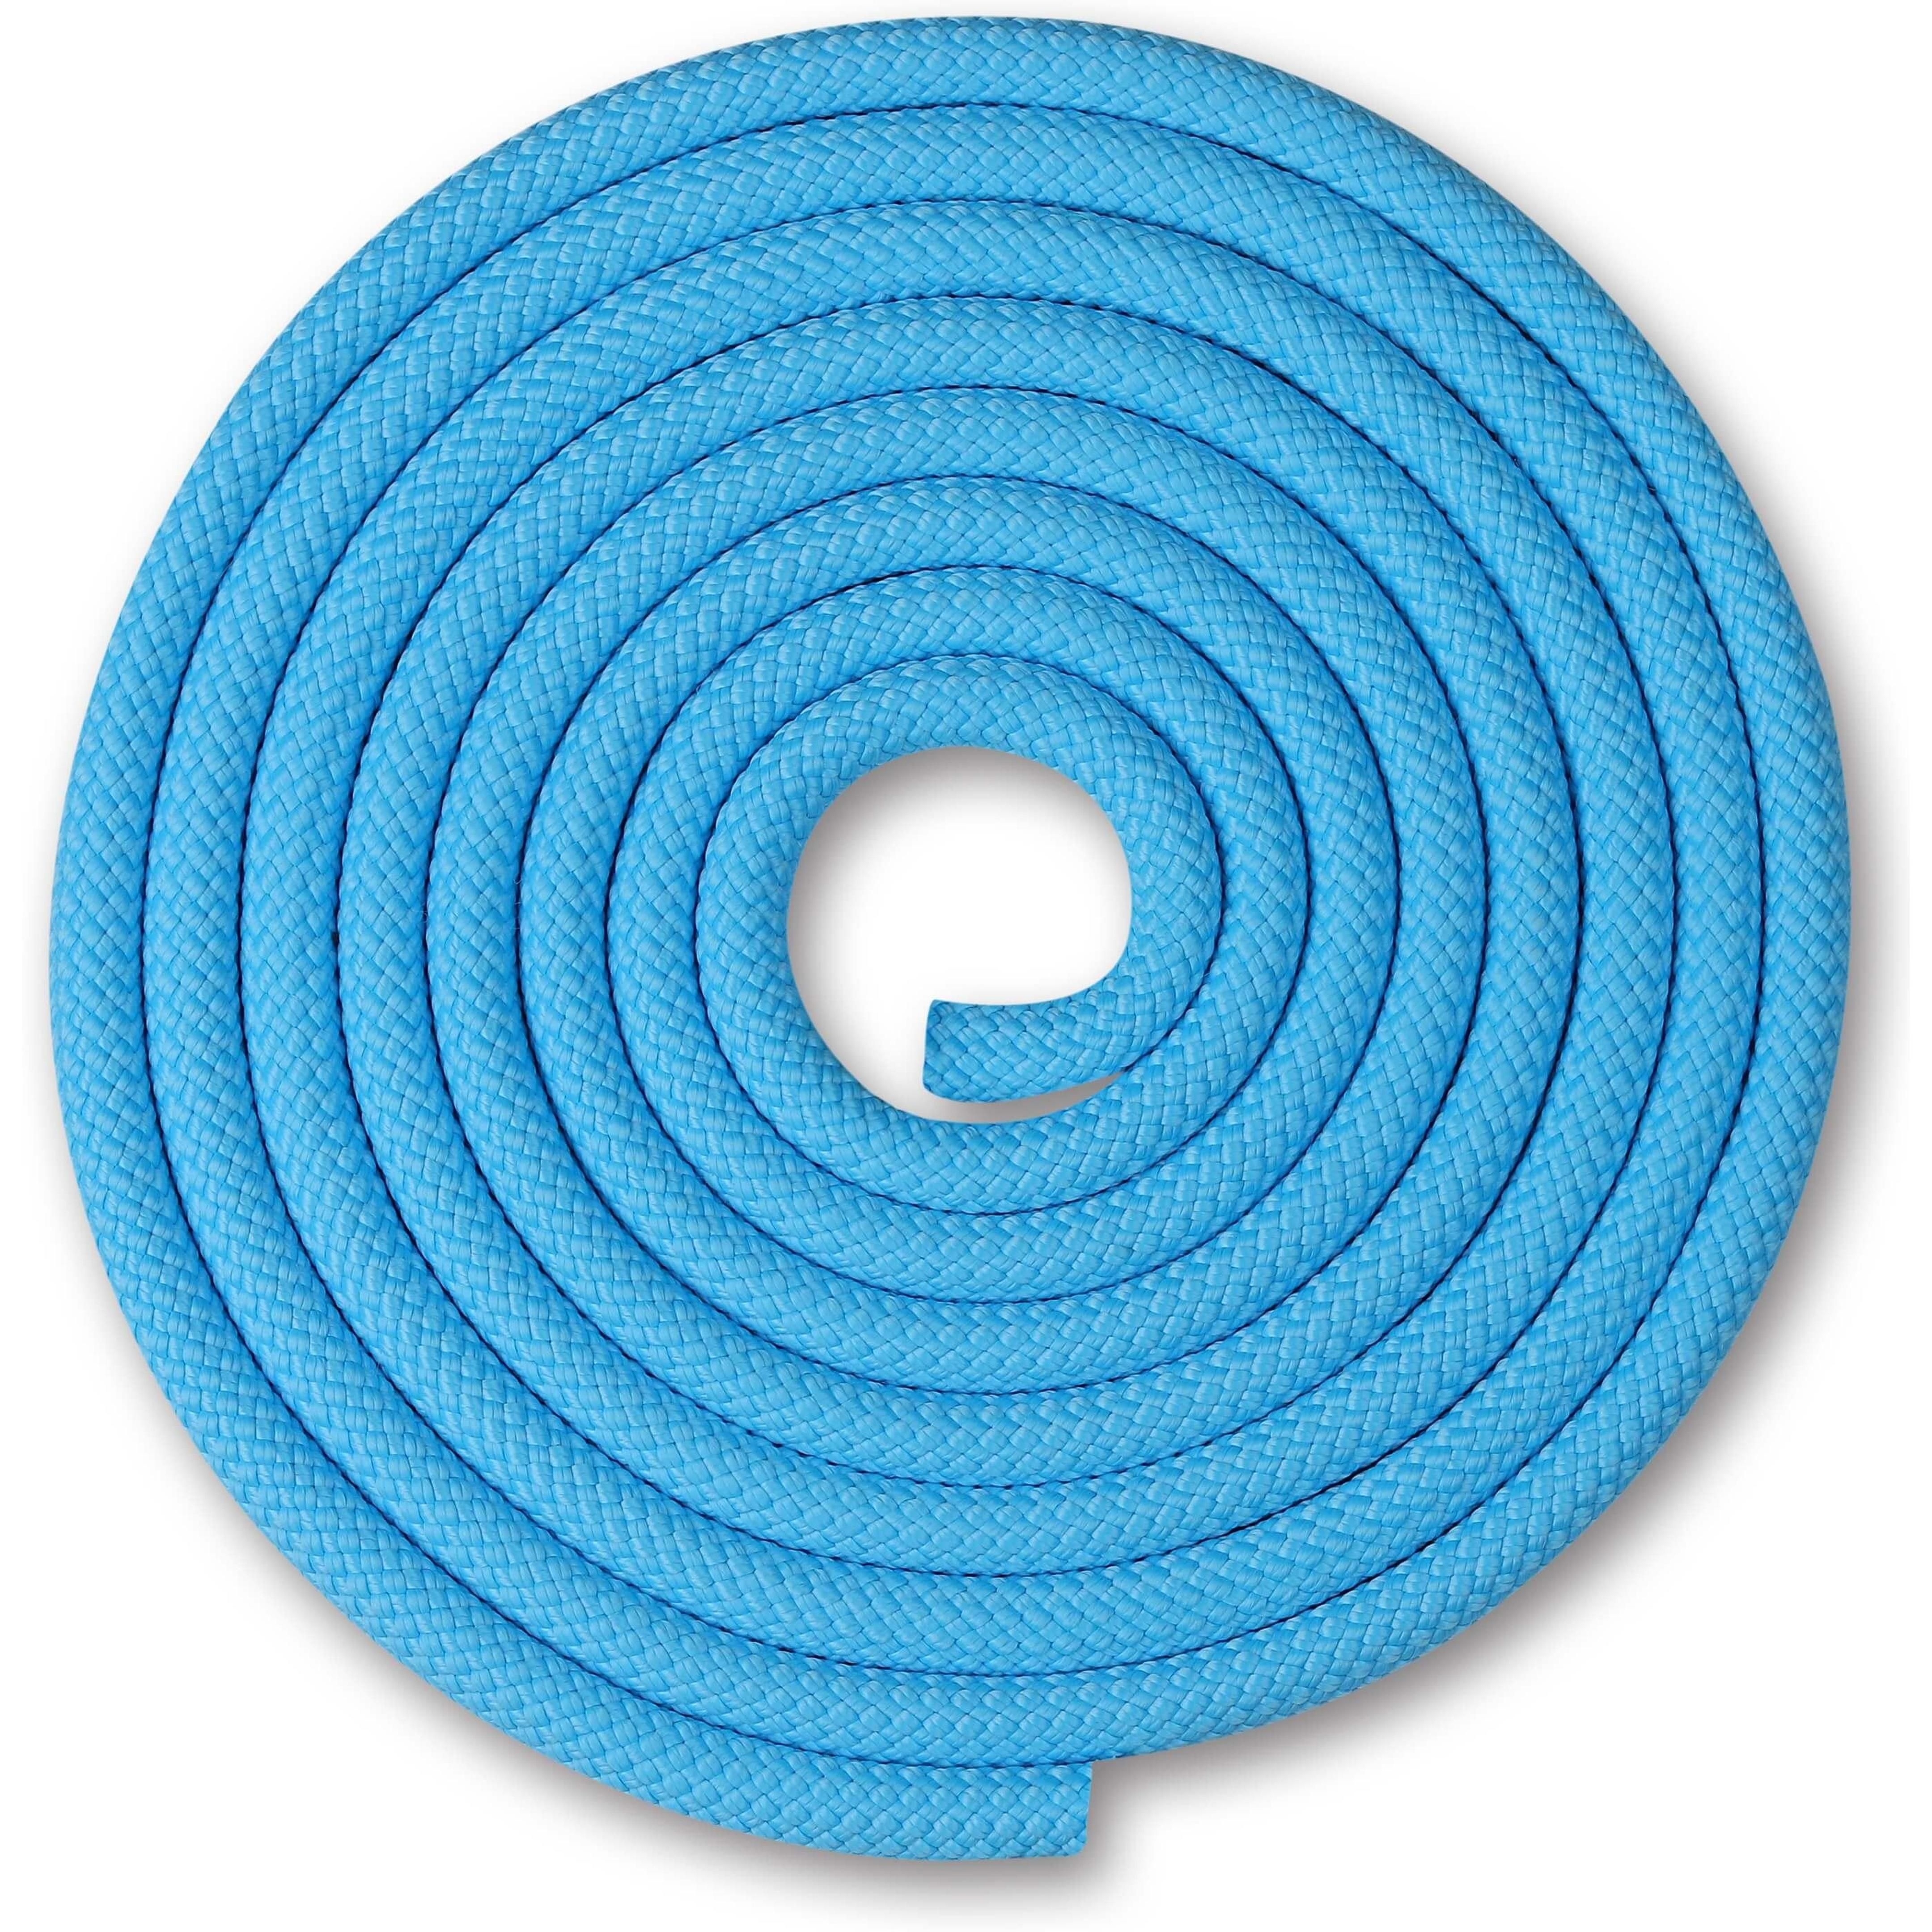 Cuerda para Gimnasia Rítmica Ponderada 150g INDIGO 2,5 m Azul Claro